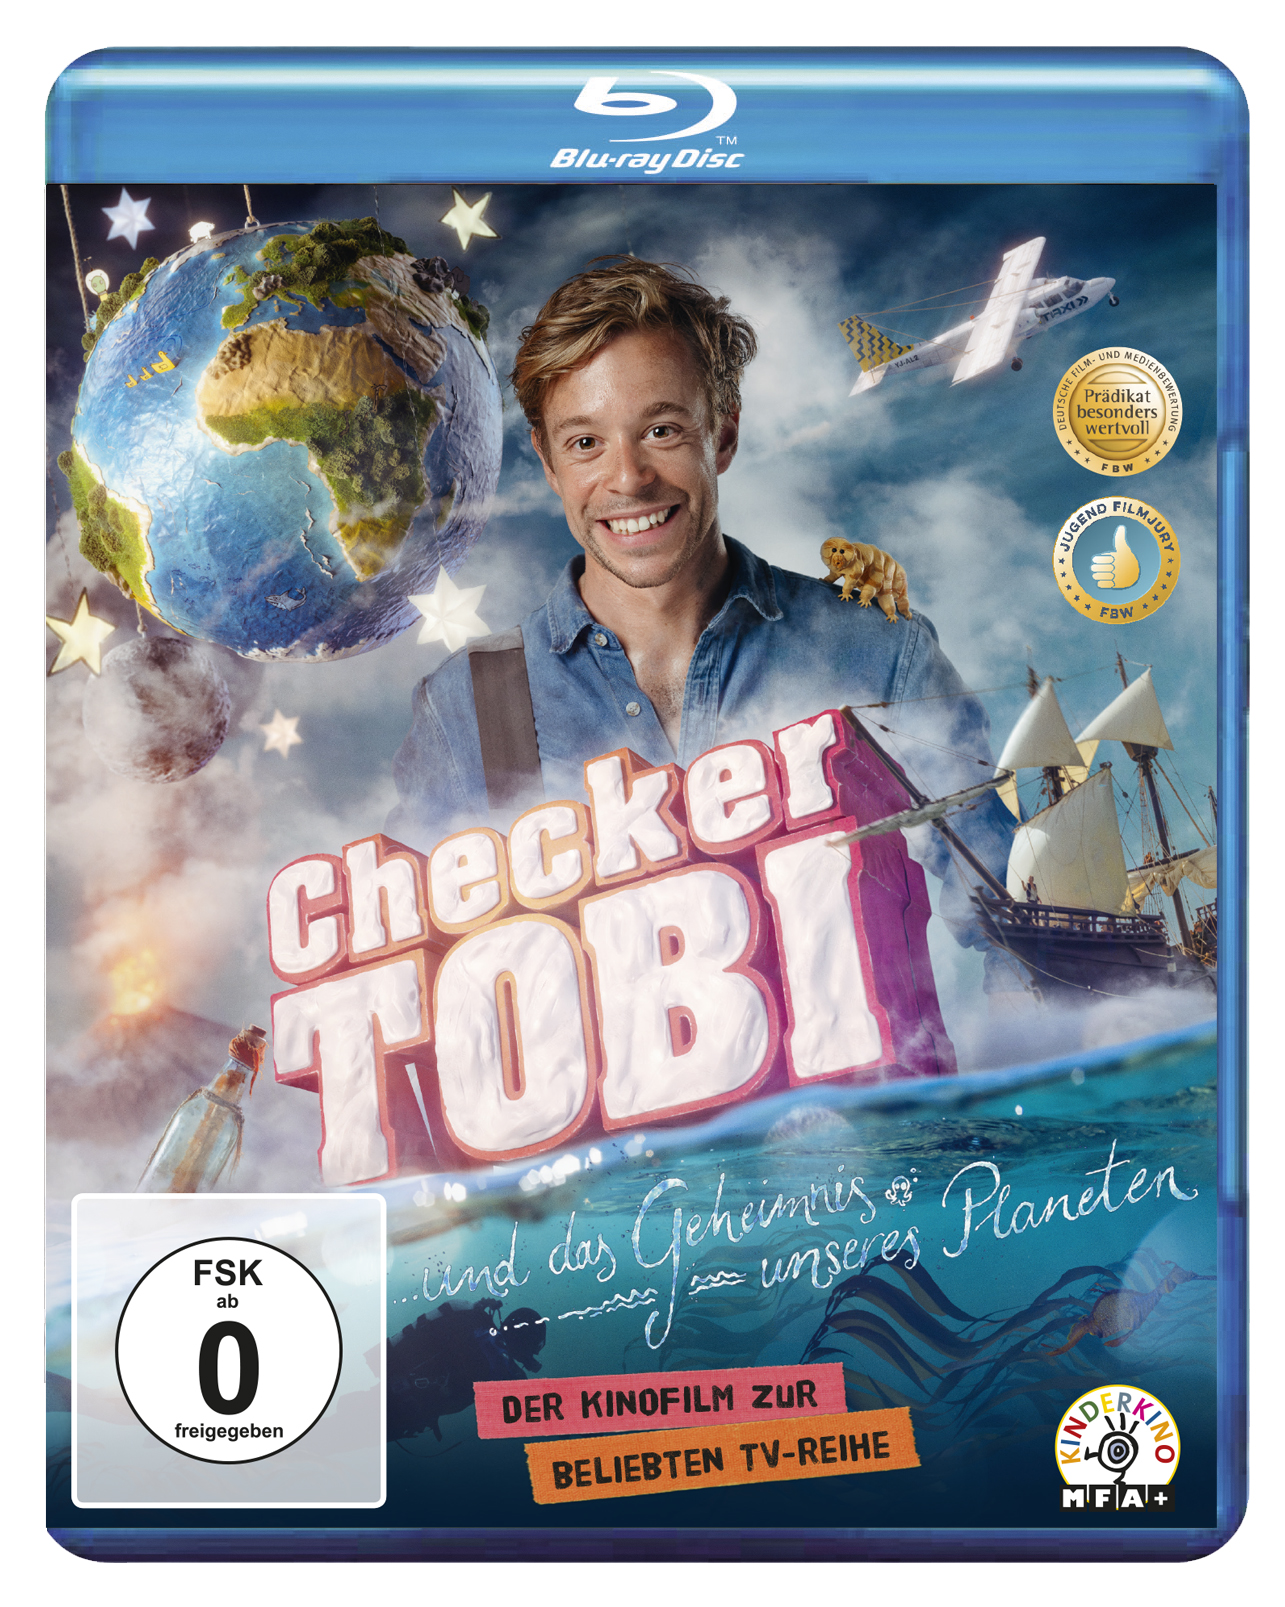 Blu-ray Tobi Geheimnis das unseres Planeten Checker und